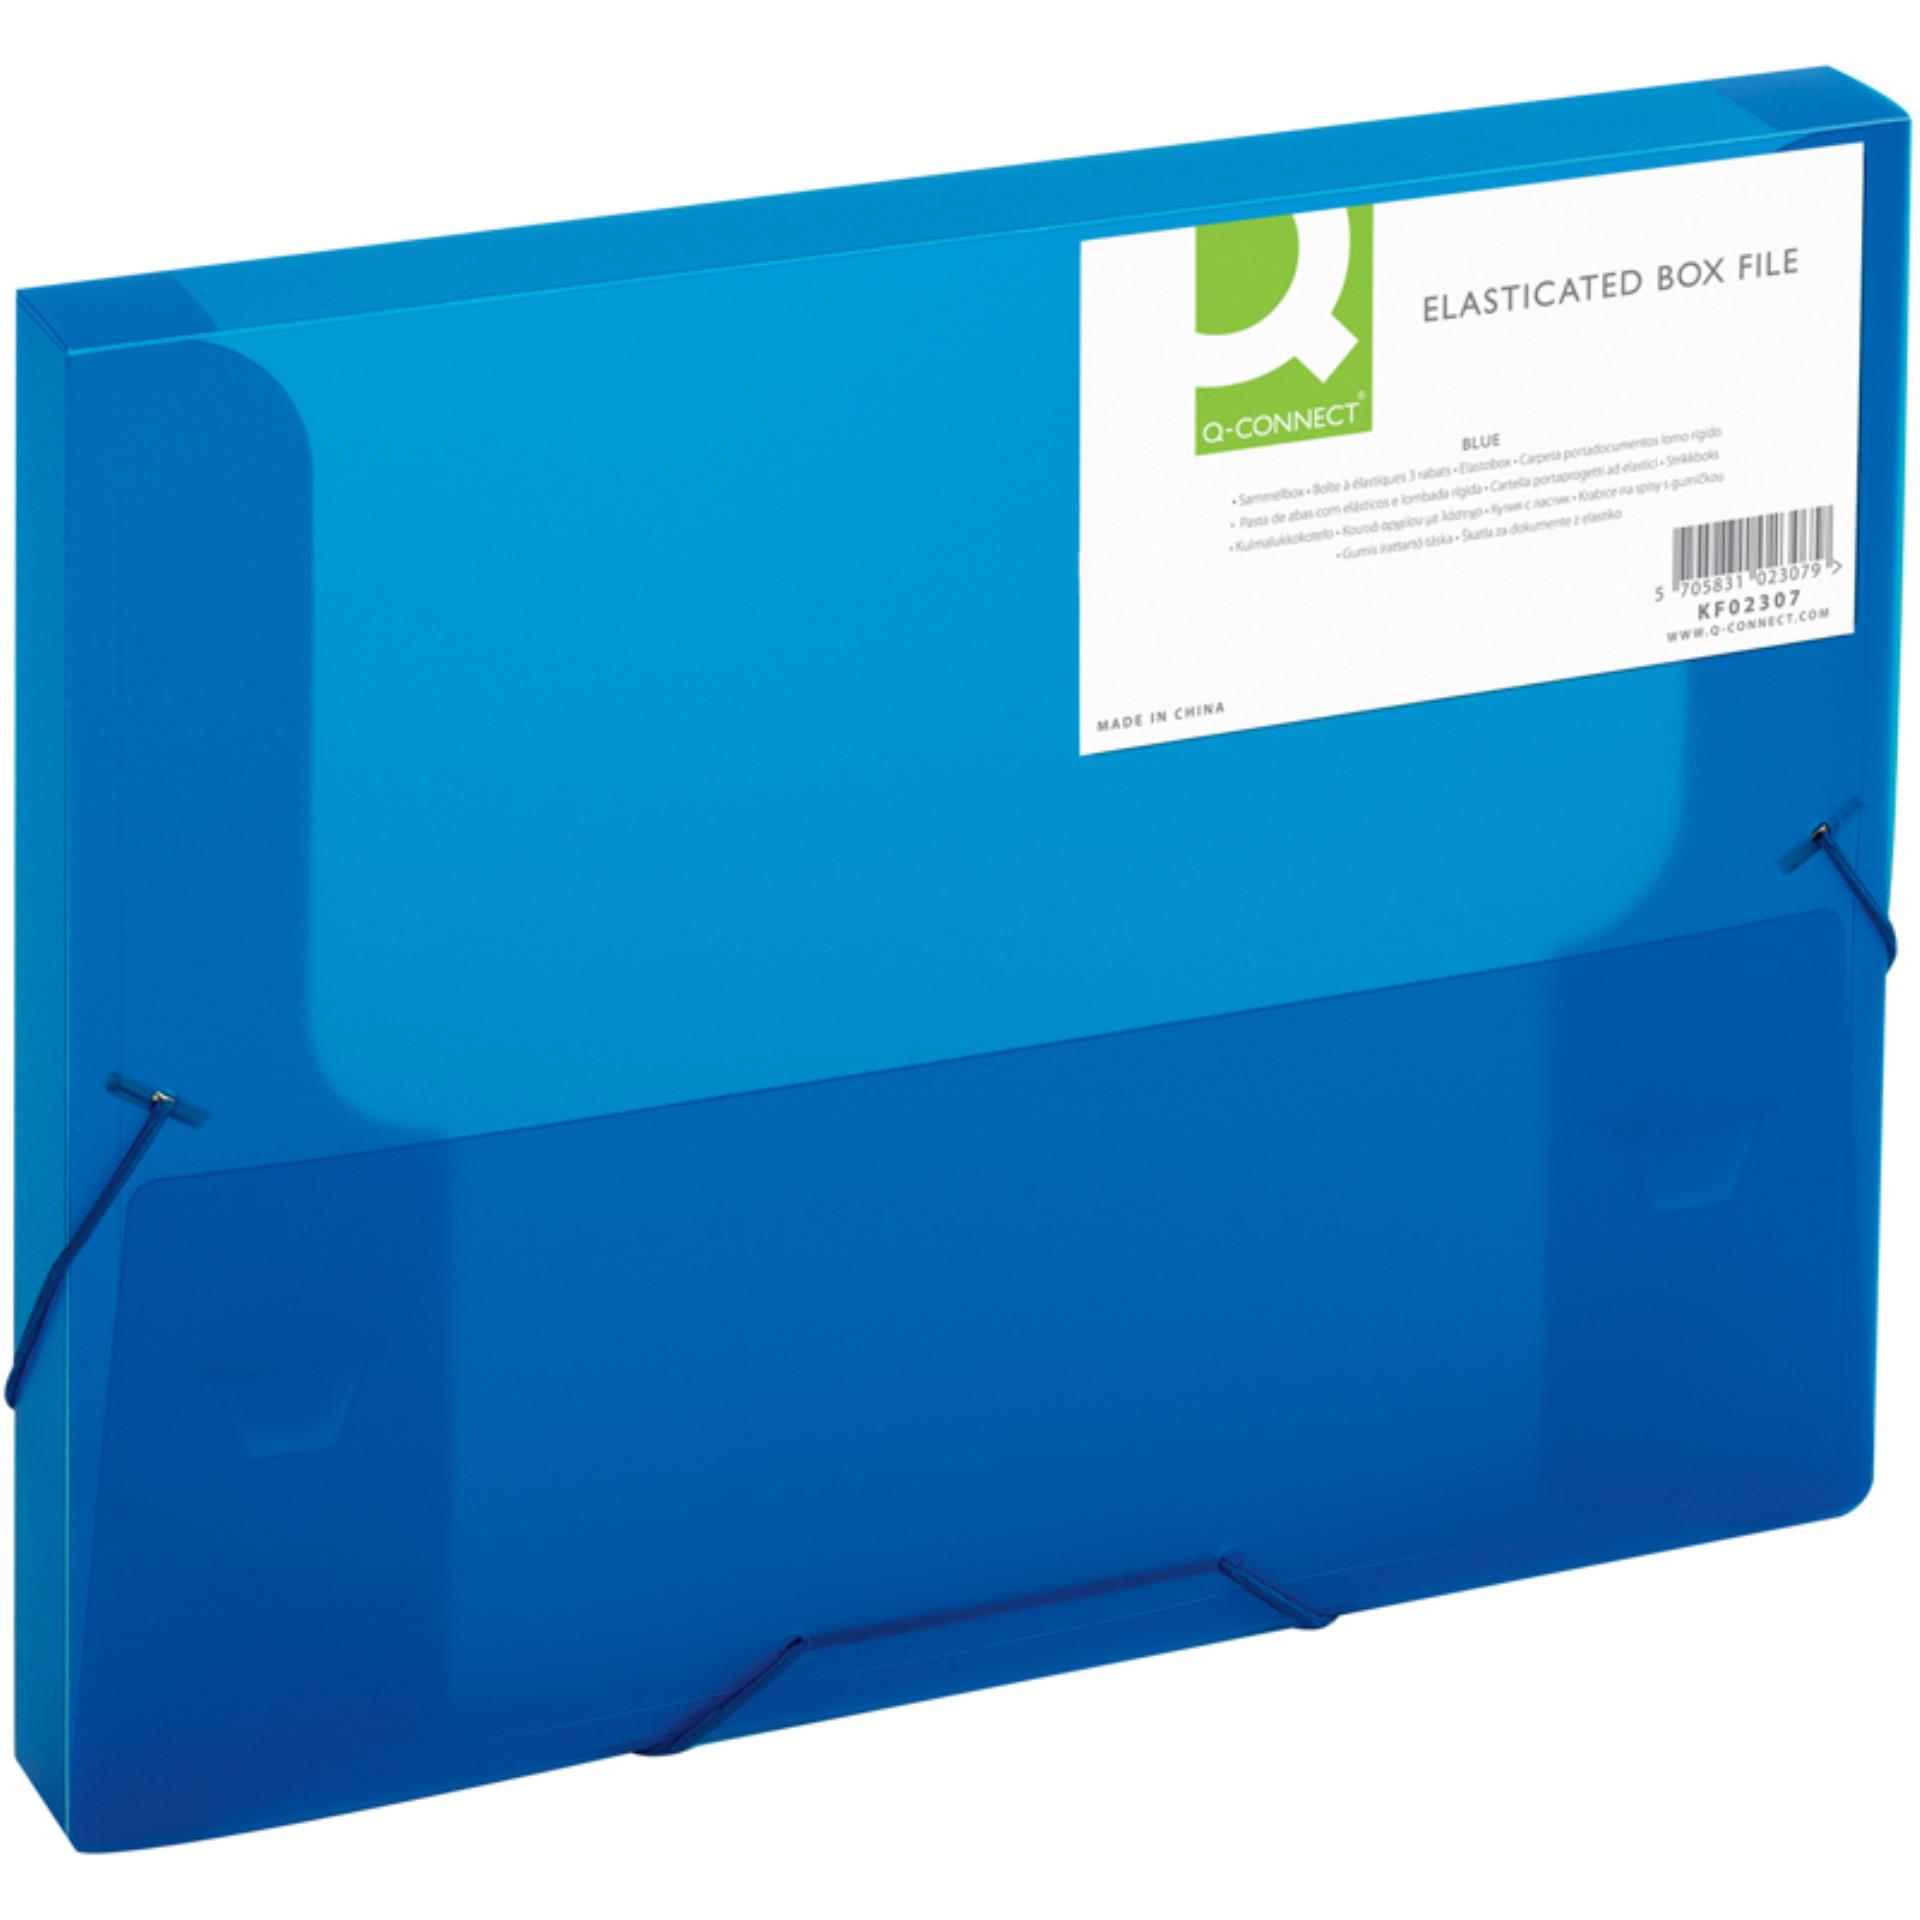 Q-CONNECT Box na spisy Q-C A4 s gumič., transp. modrá 2,5 cm